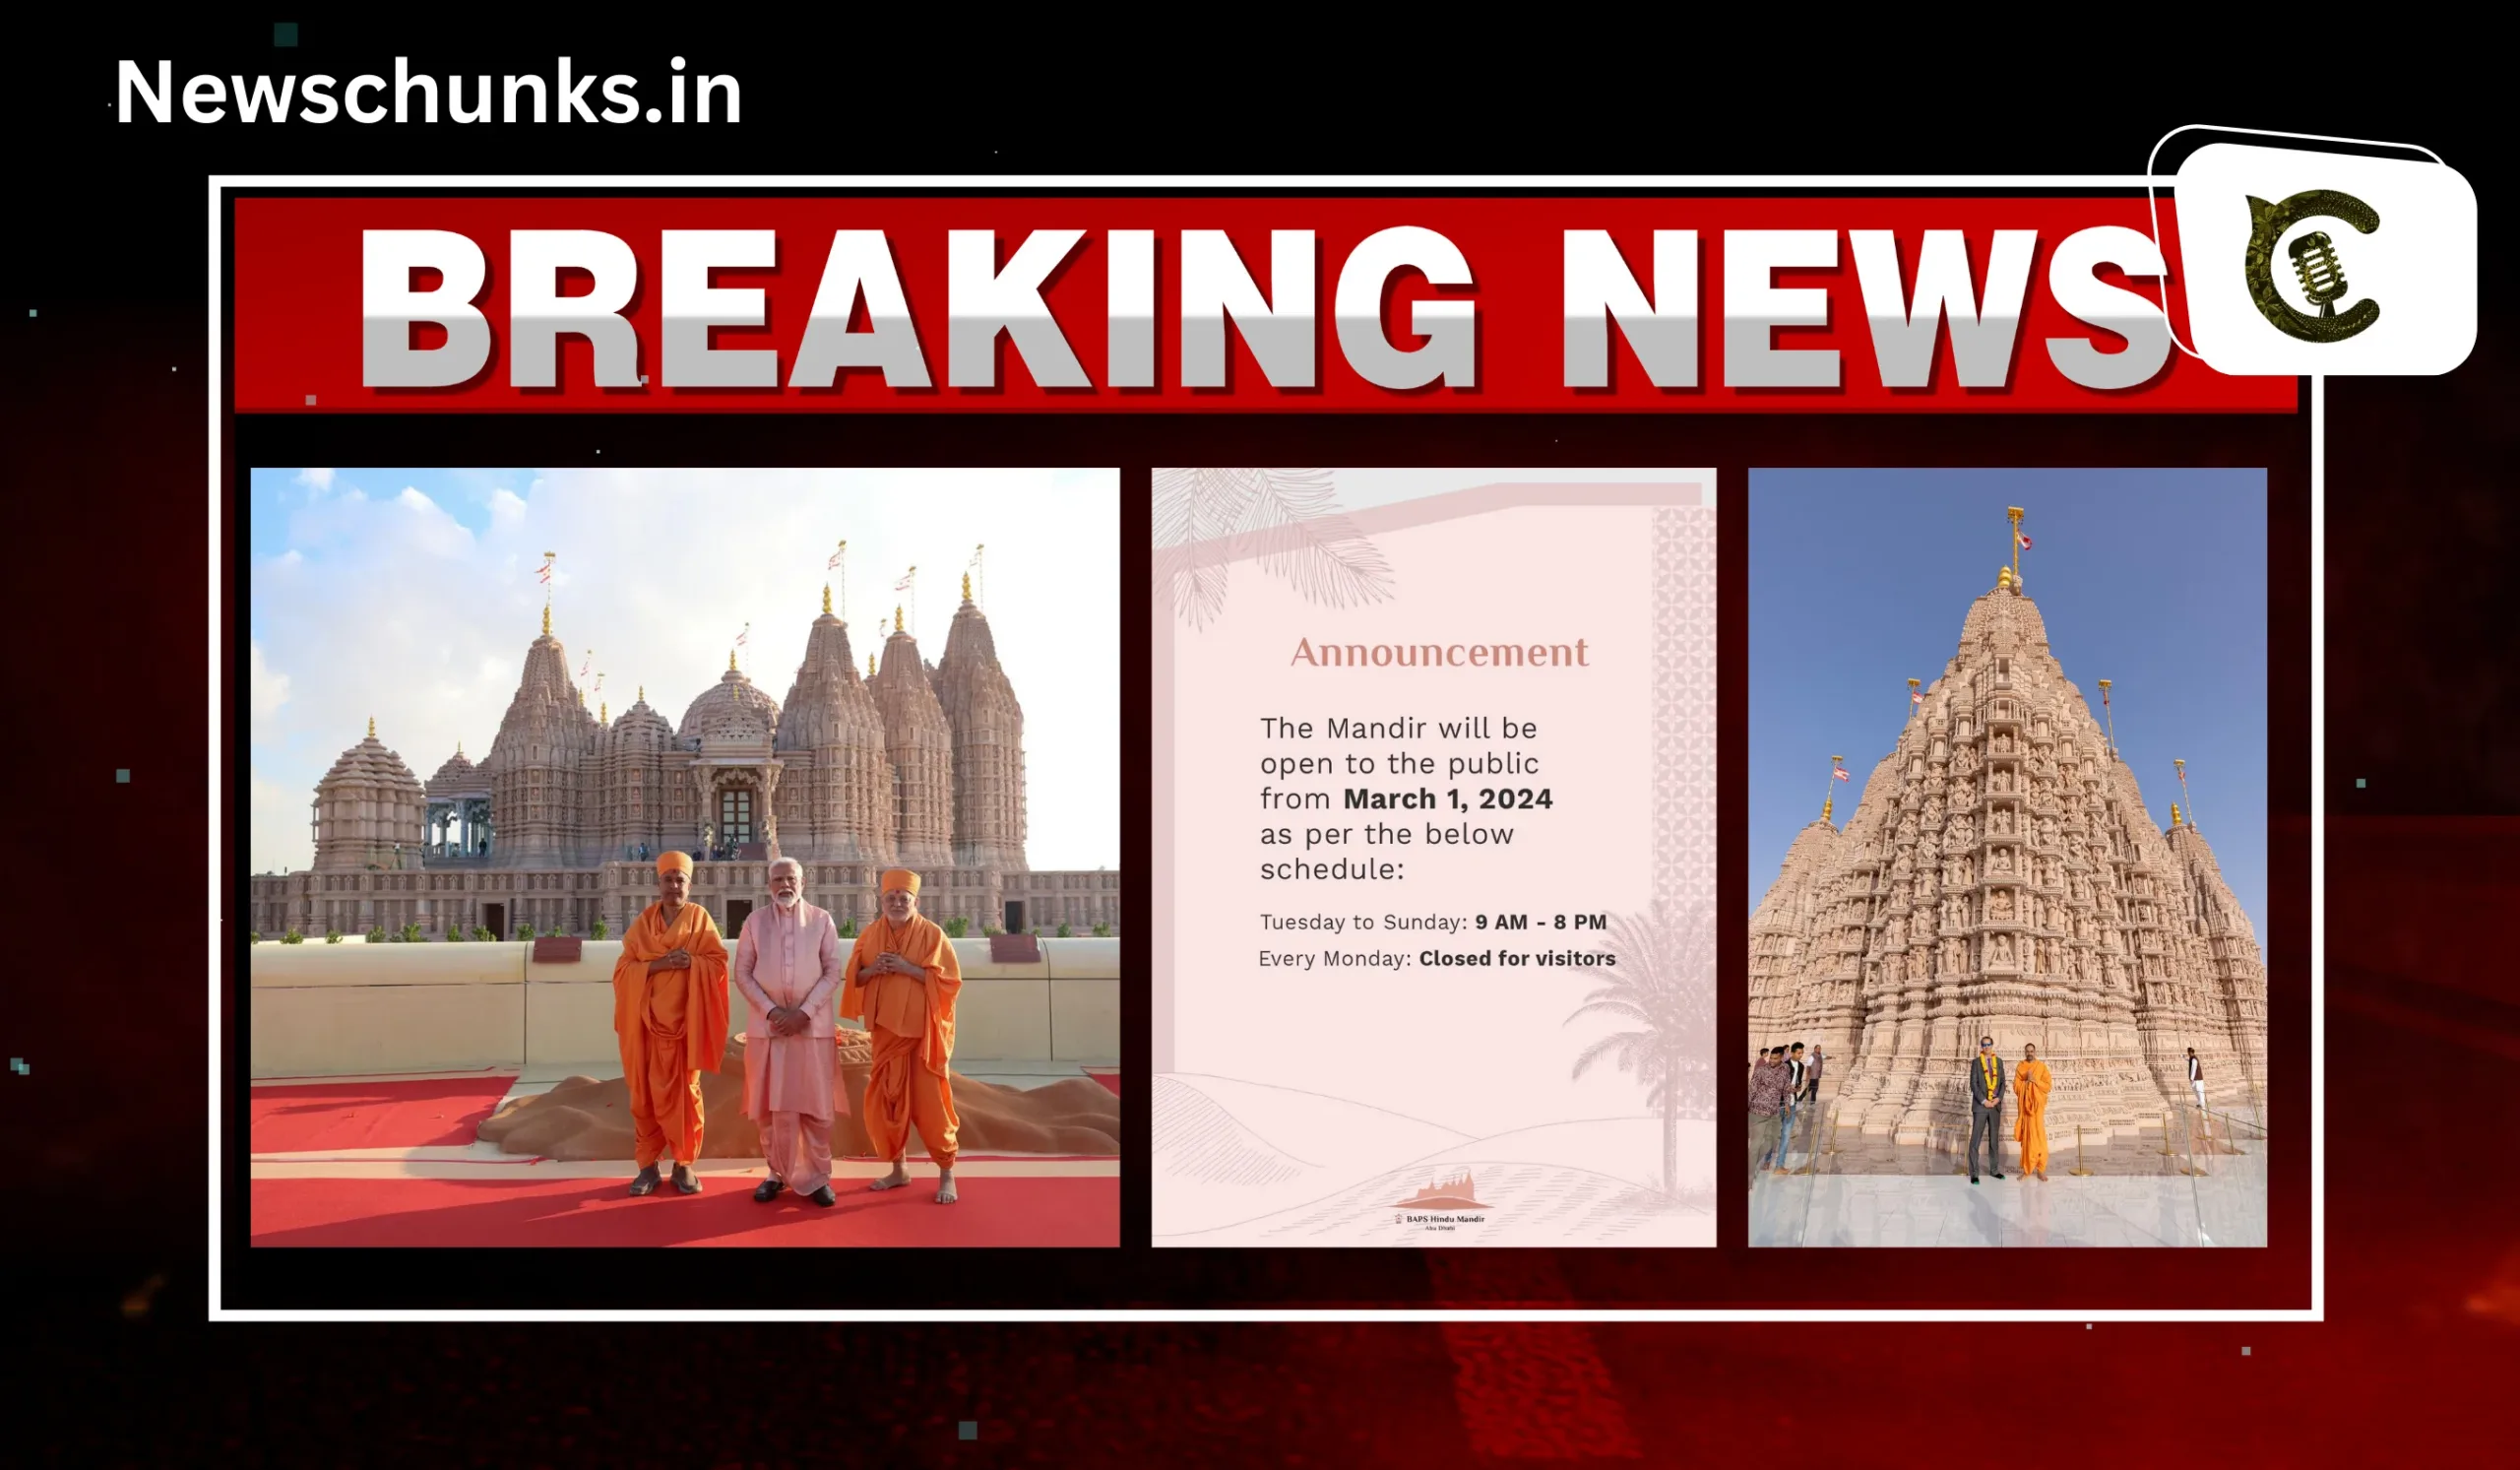 Abu Dhabi's Hindu temple opened to the public: अबू धाबी का हिंदू मंदिर लोगों के लिए खोला गया, जानें क्या है ड्रेस कोड